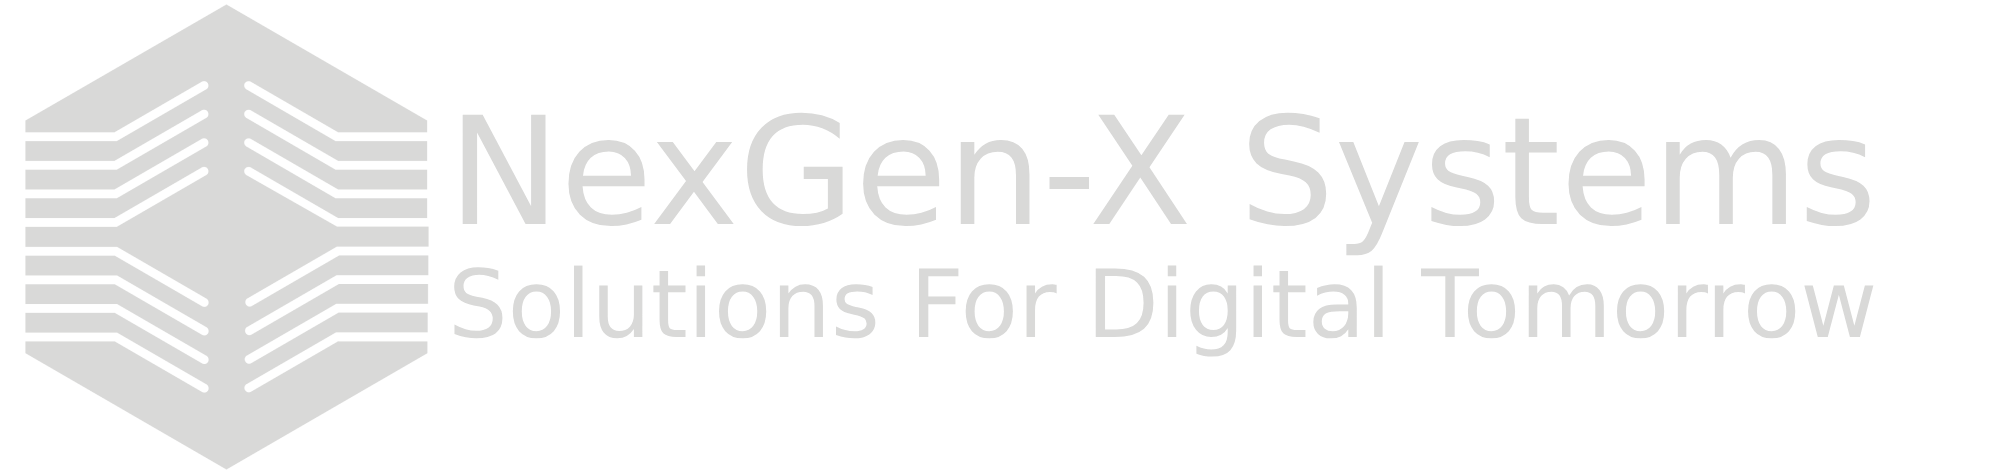 NexGen-X Systems